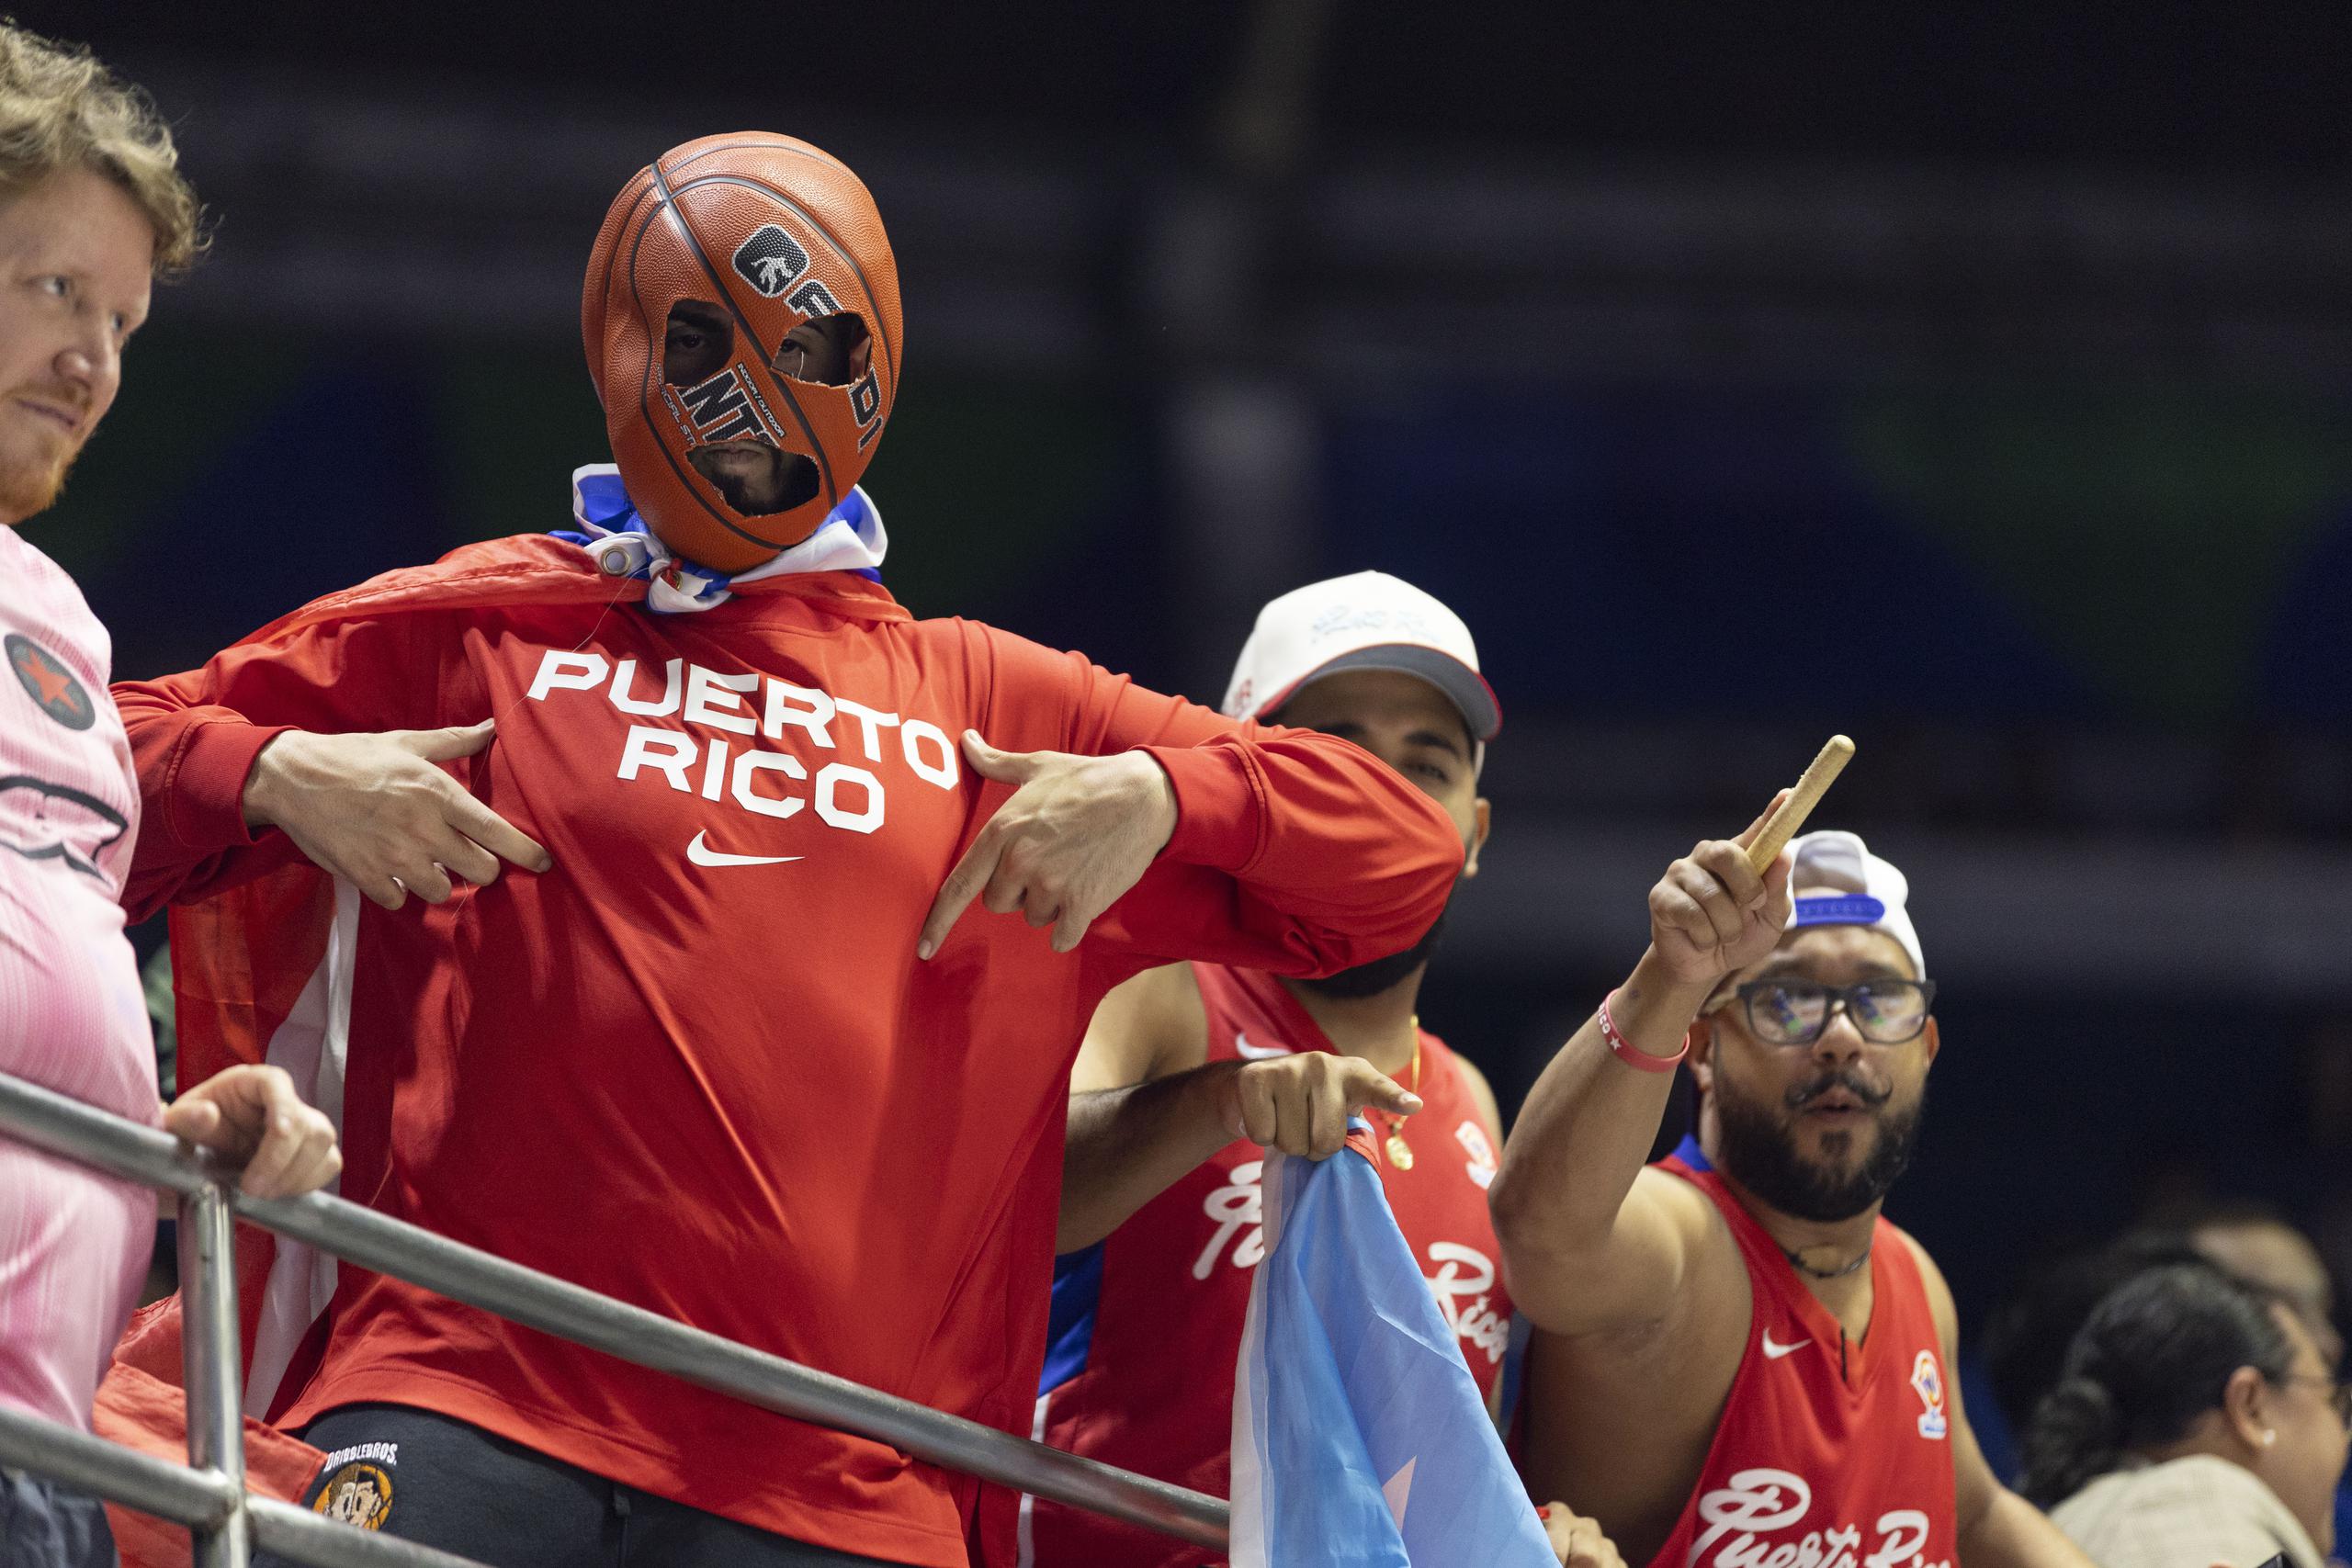 El básquet boricua jugó por primera vez en un escenario de nivel mundial en Chile en el 1959, país a donde regresará por primera vez desde entonces por motivo de la celebración de los Juegos Panamericanos Santiago 2023.